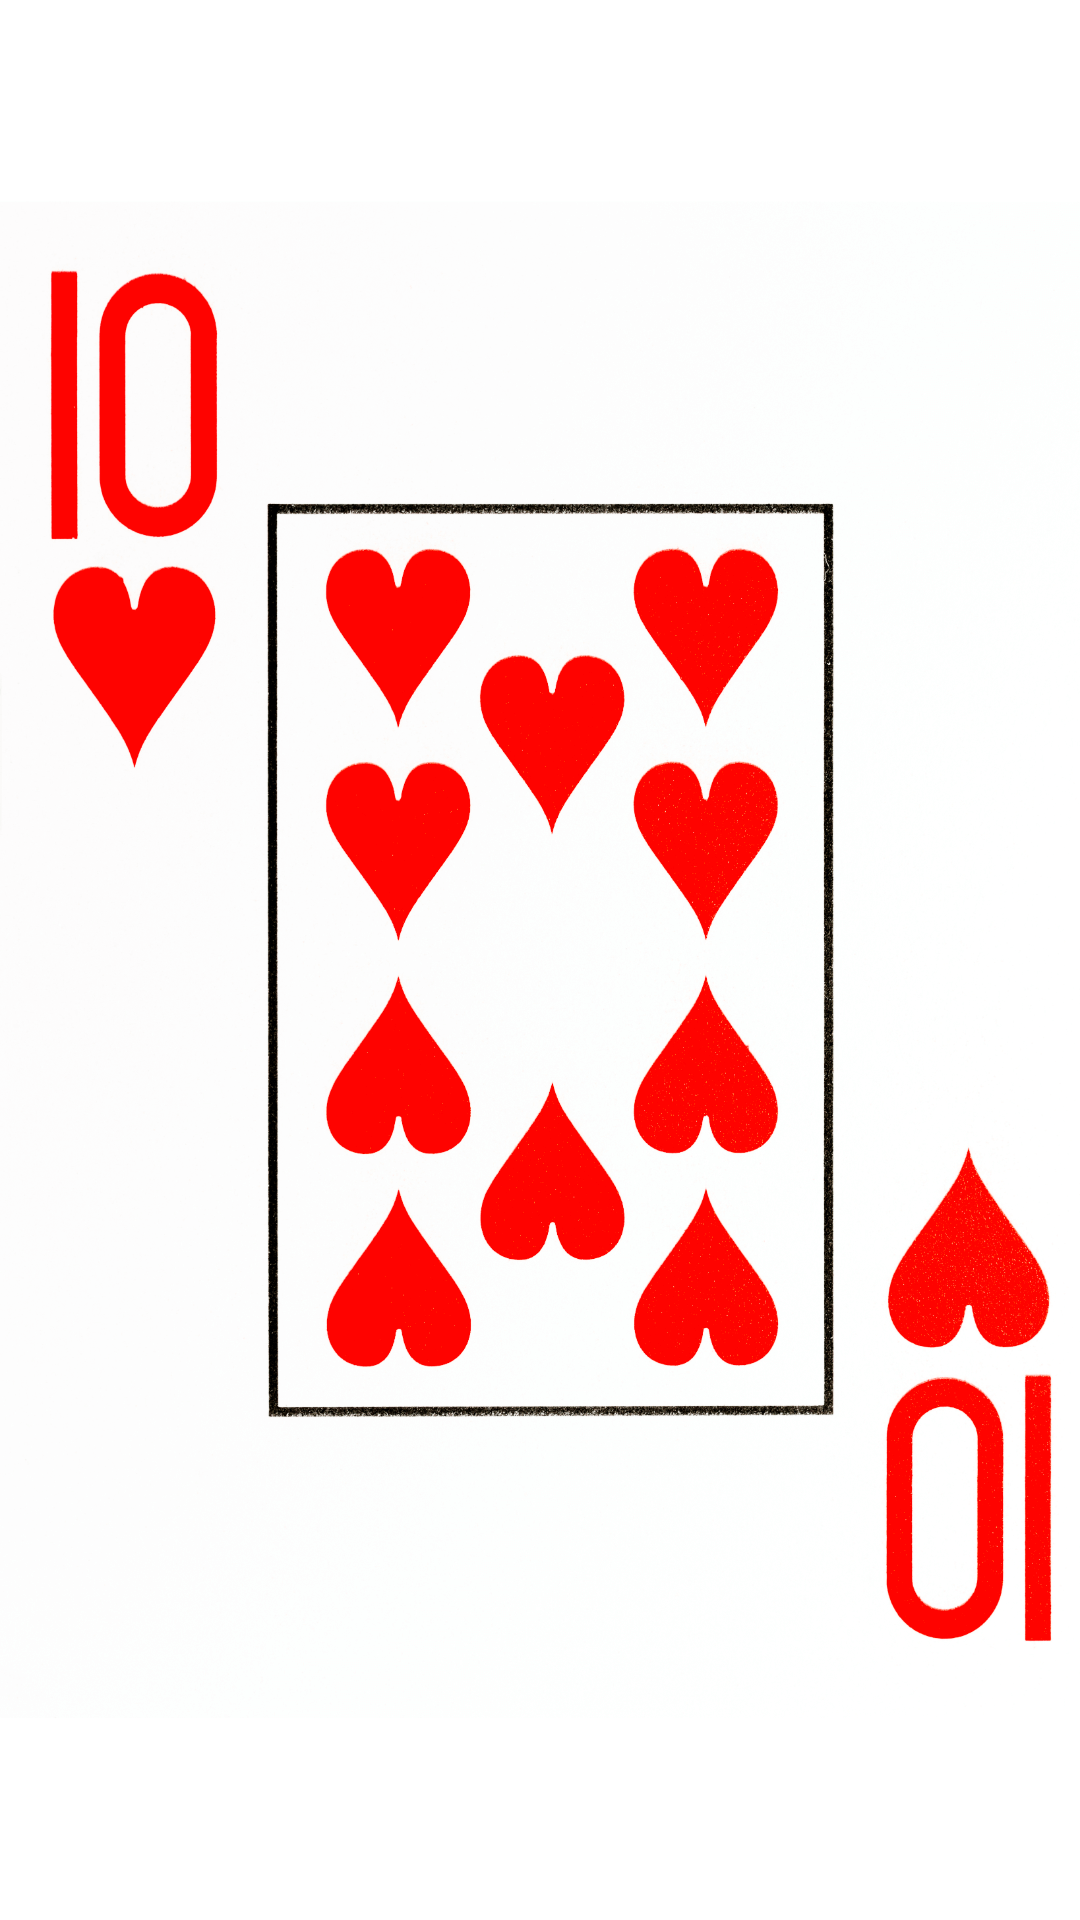 10 de coeur signification